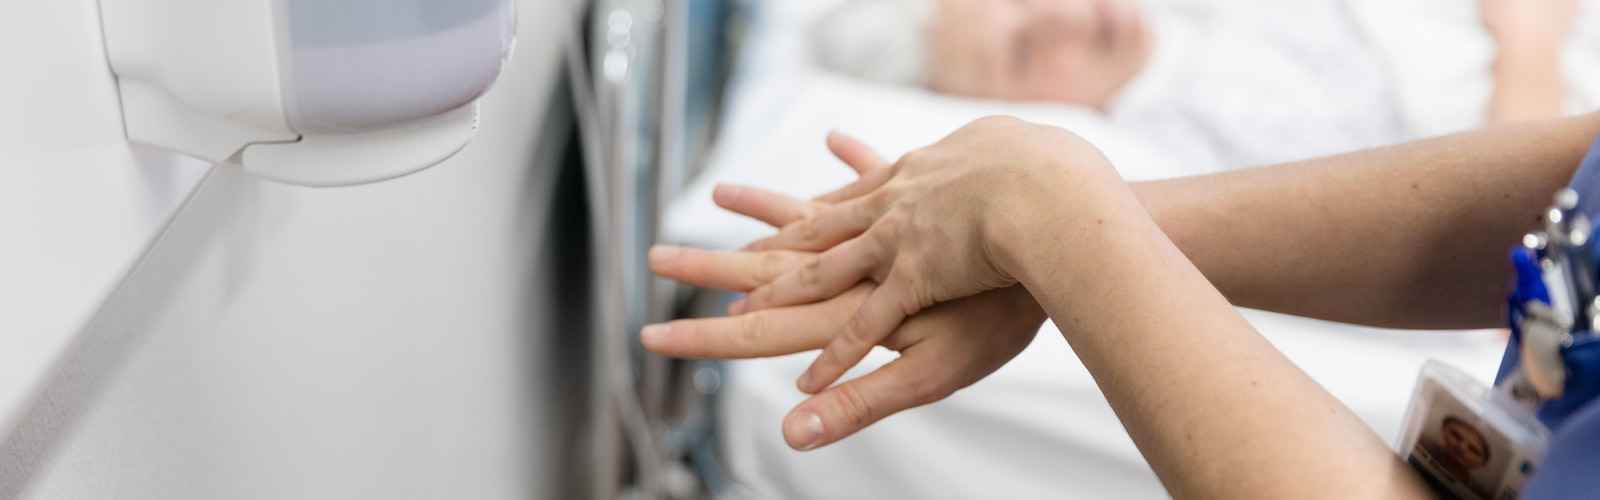 Sundhedsfagligt personale, der desinficerer hænder i et patientafsnit